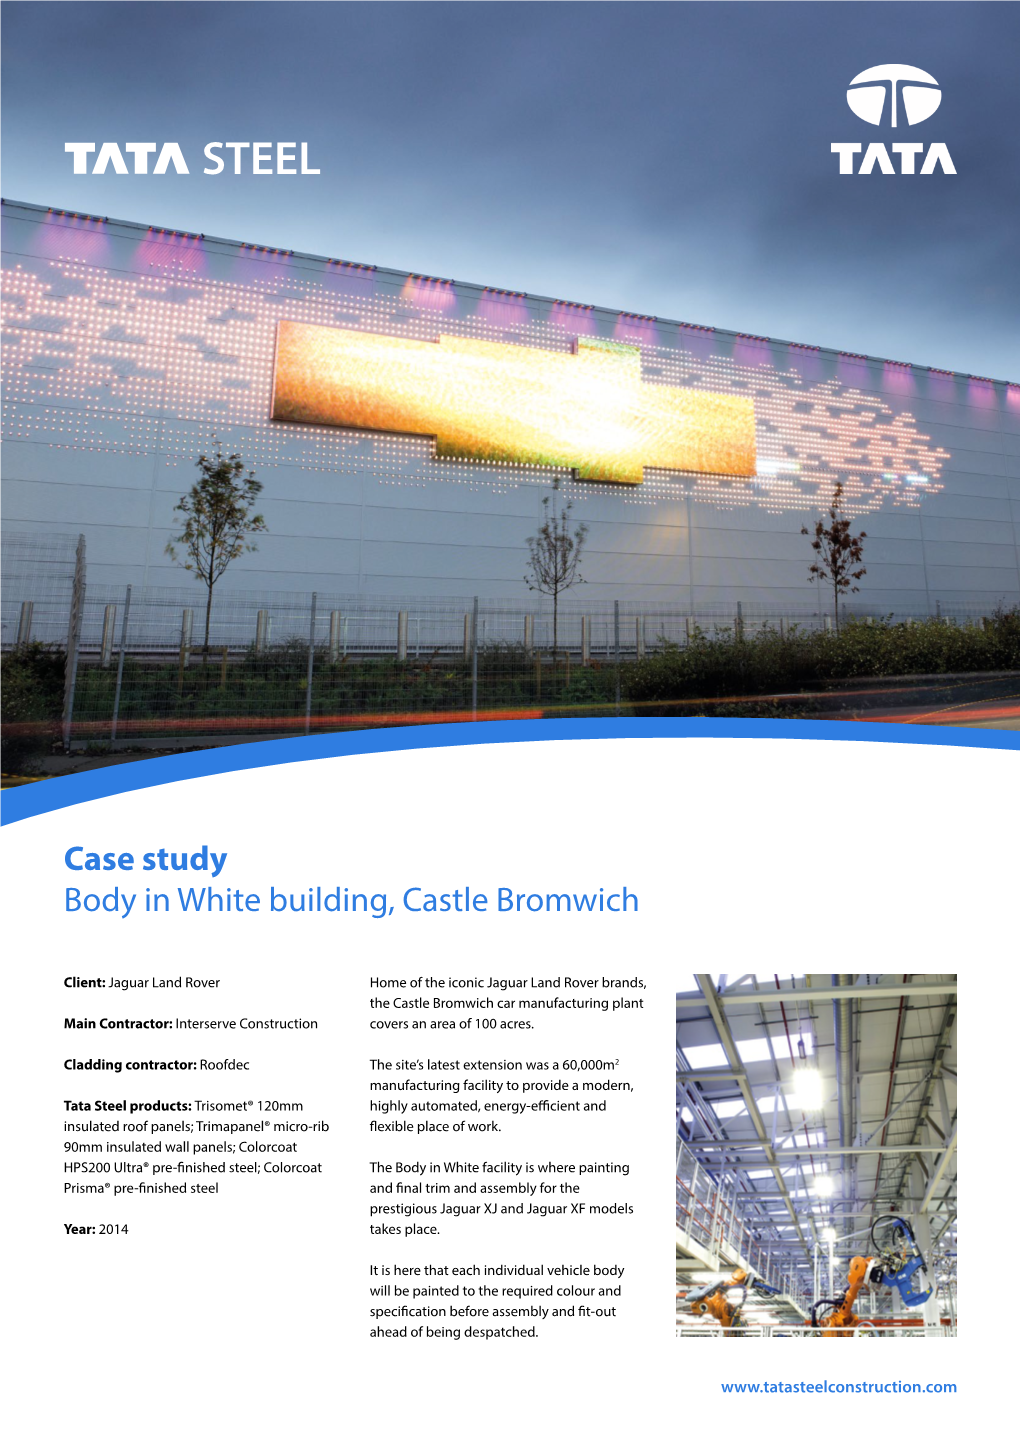 Case Study Body in White Building, Castle Bromwich